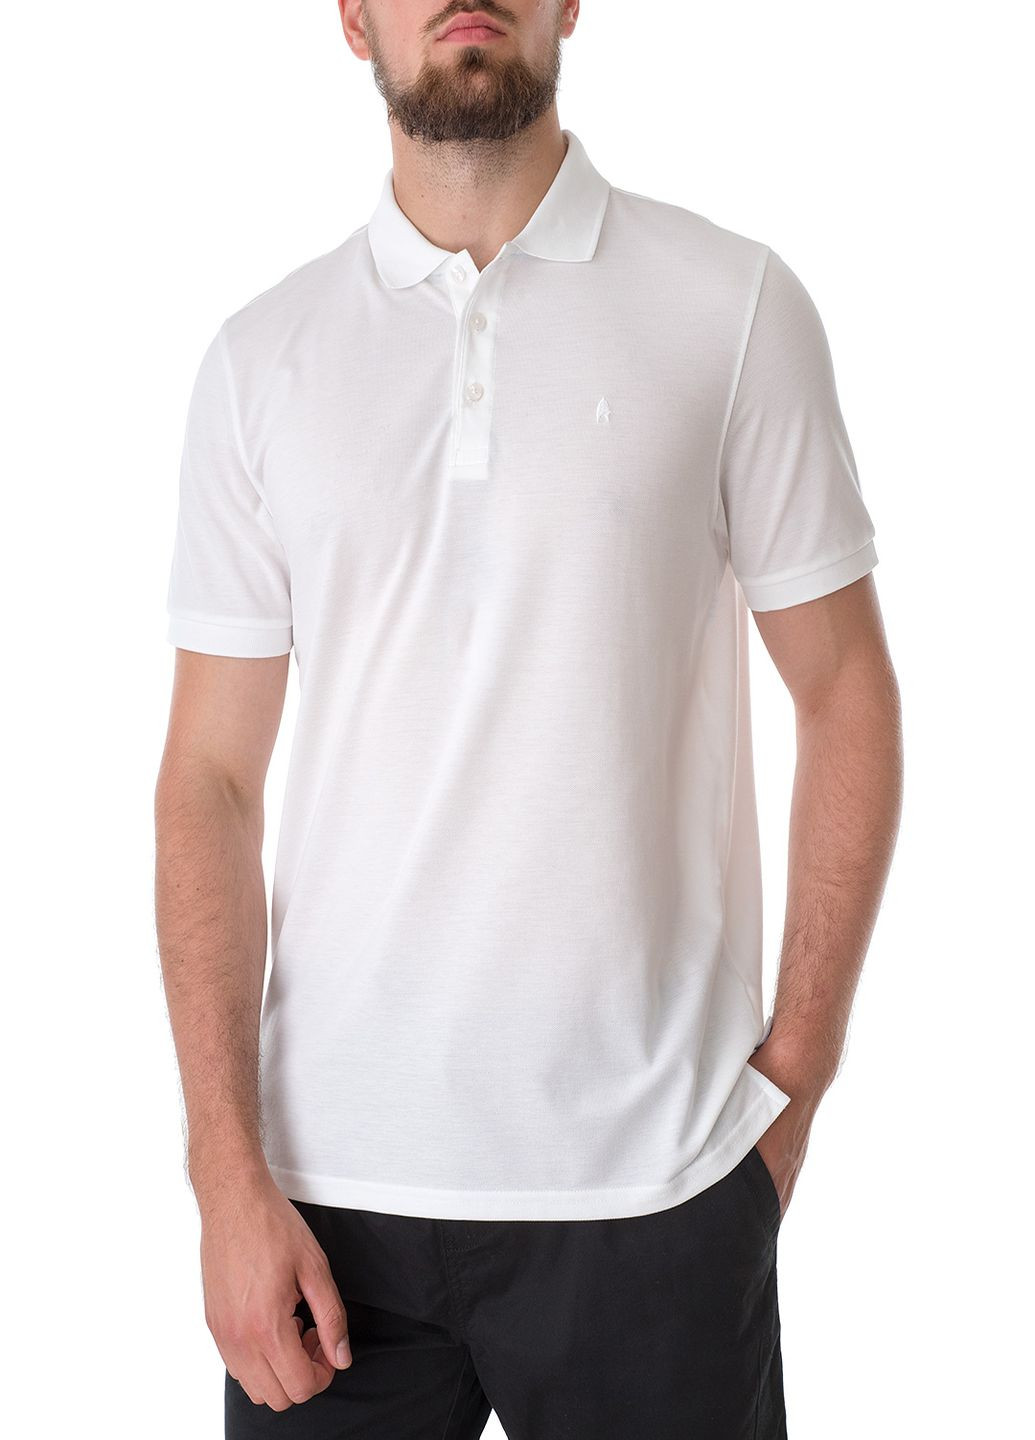 Белая футболка-поло для мужчин Ragman однотонная